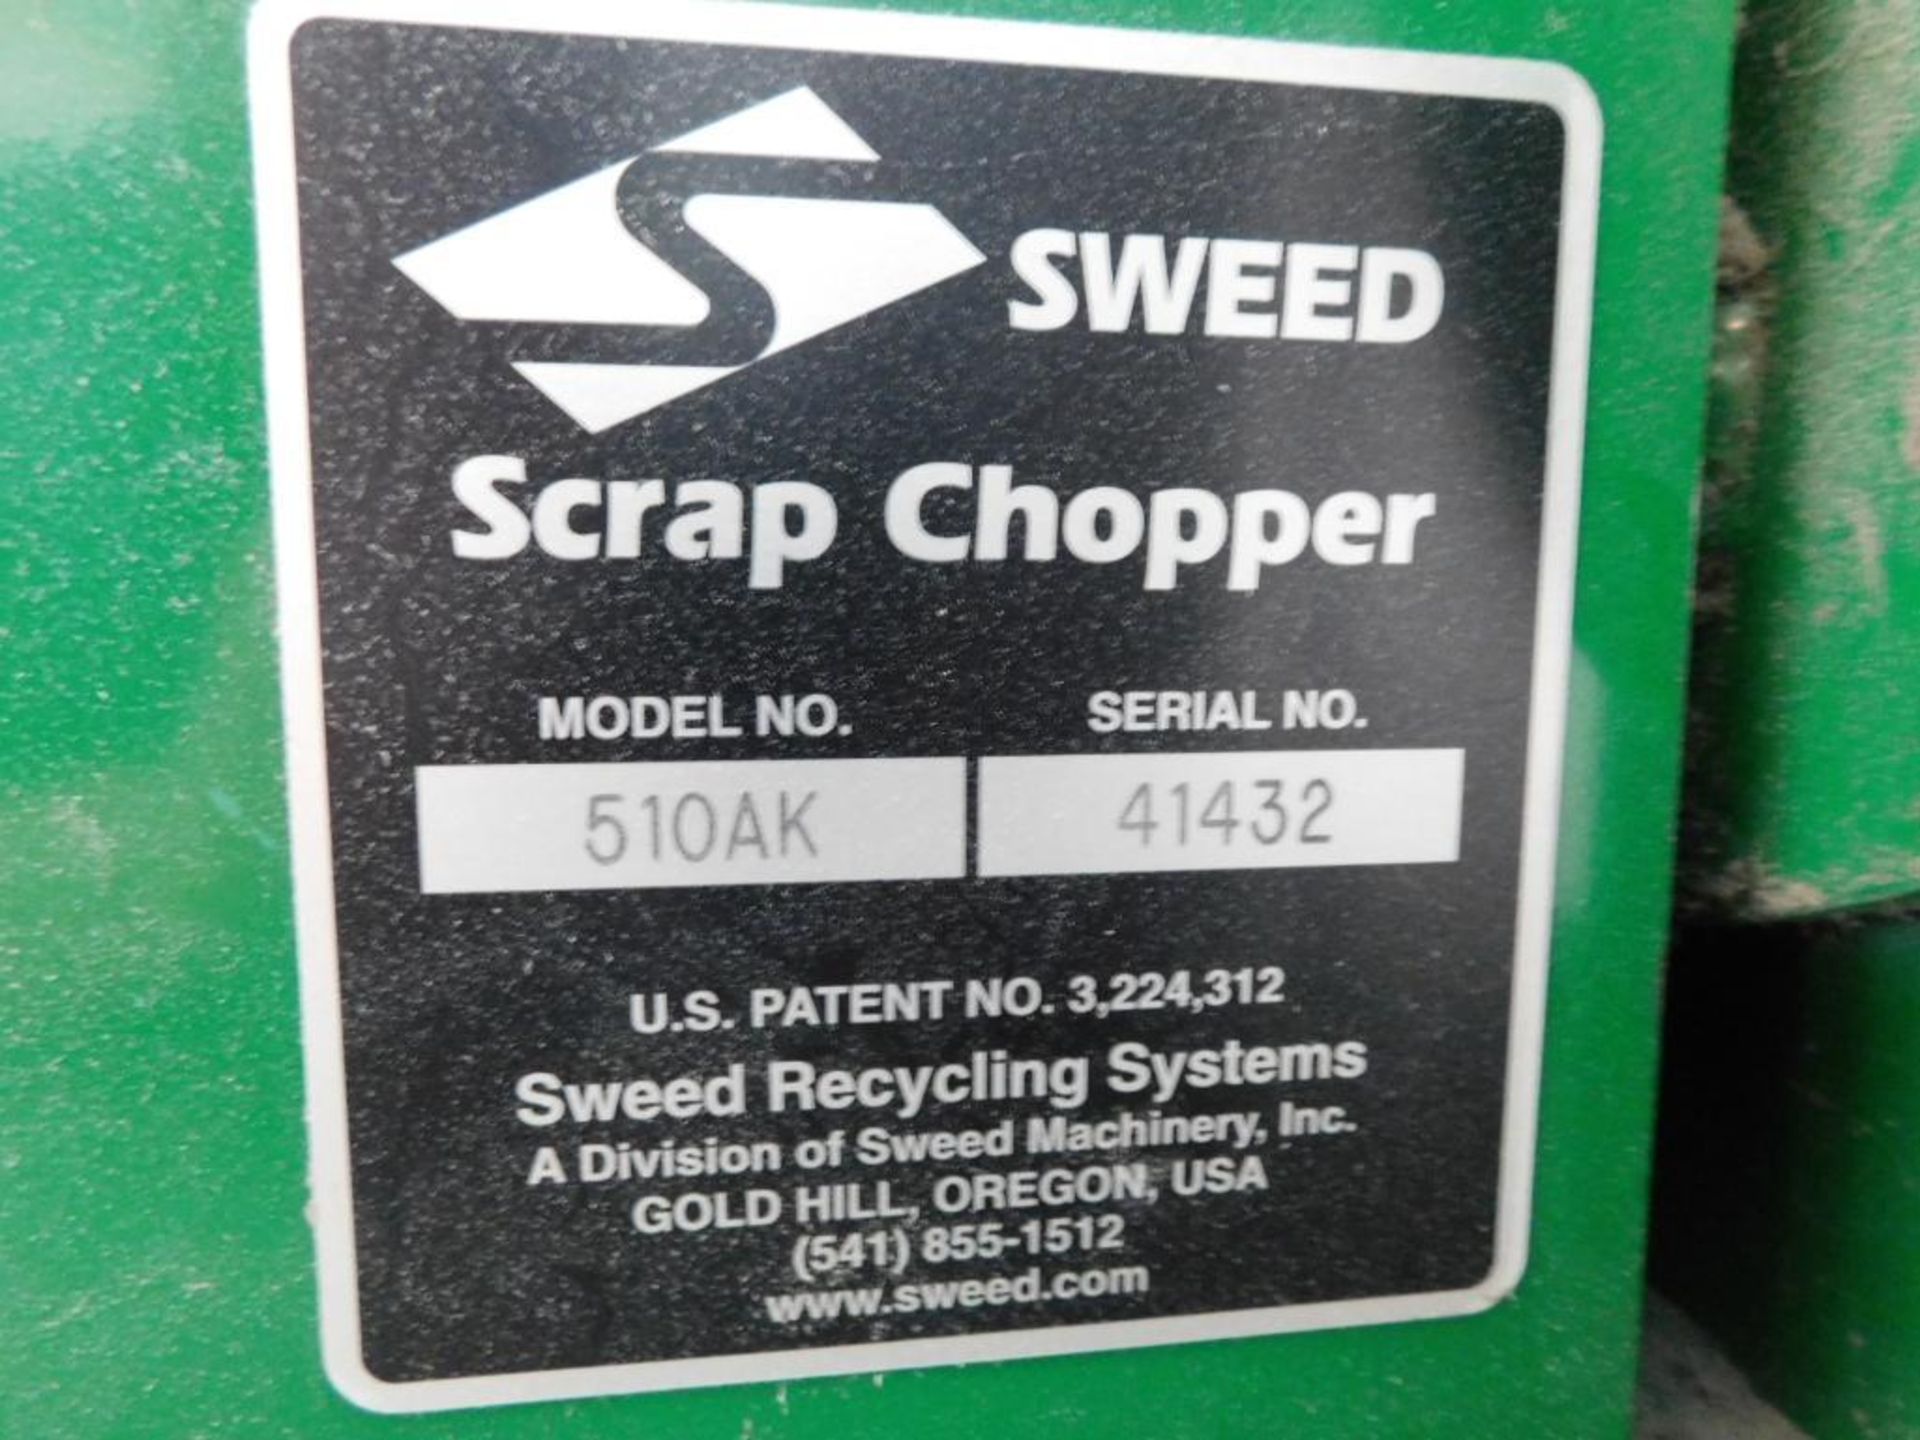 Sweed Model 510AK Scrap Chopper, S/N 41432 (LOCATION: IN MAIL ROOM, 2ND FLOOR) - Image 6 of 6